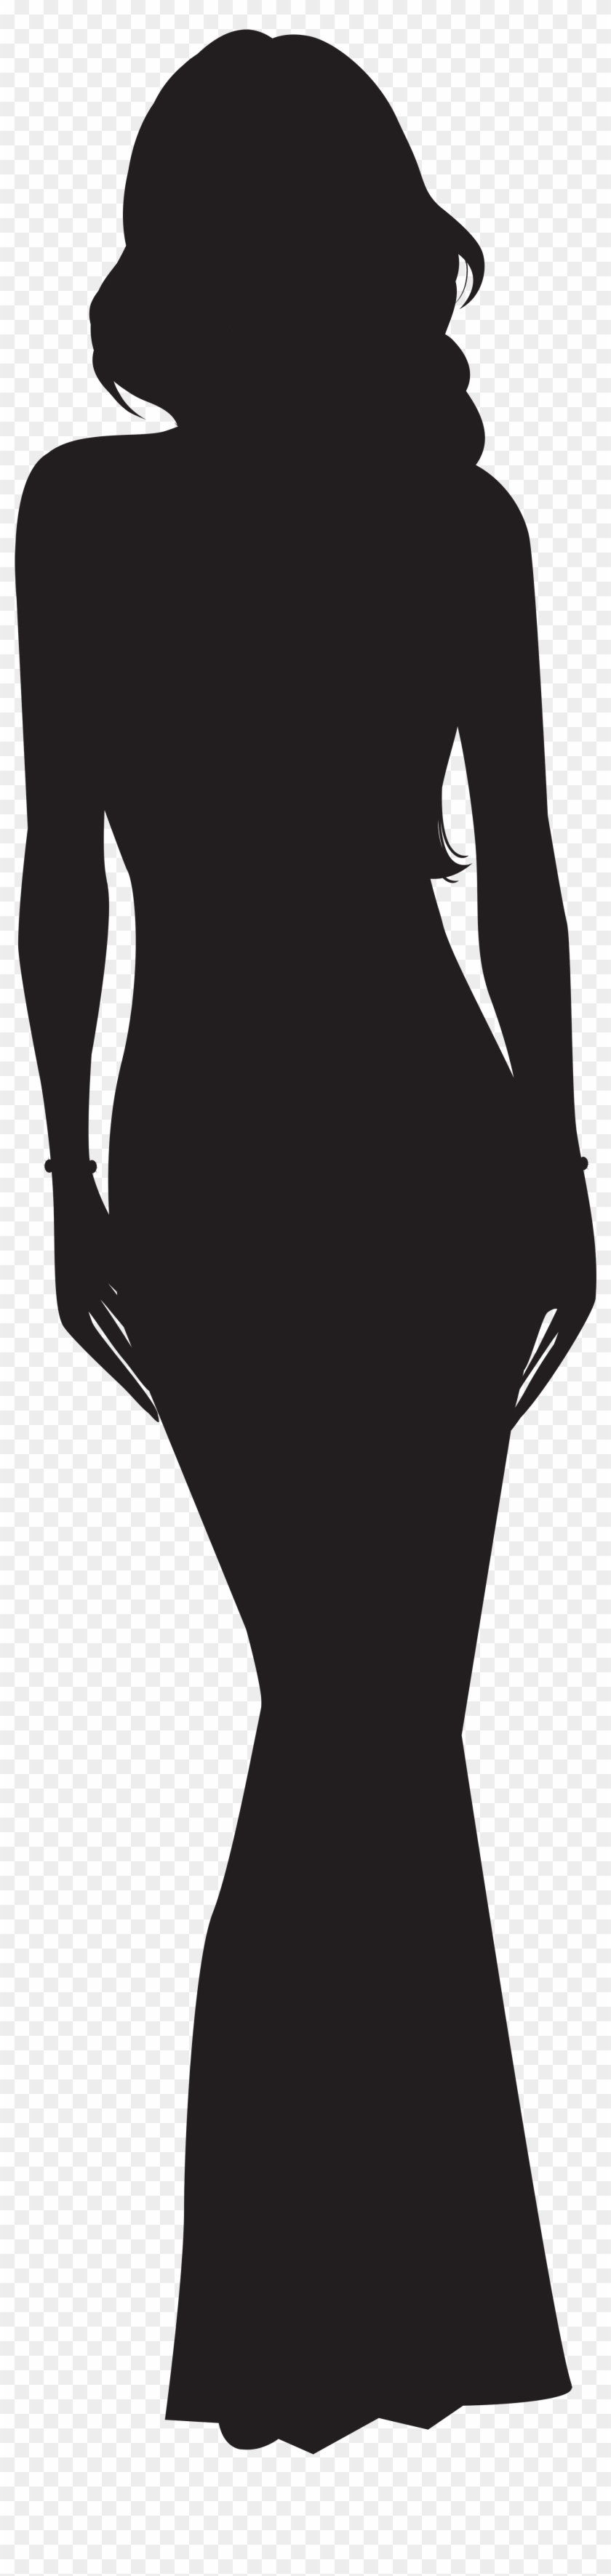 Woman Silhouette Clipart - Woman Silhouette Clip Art #368385